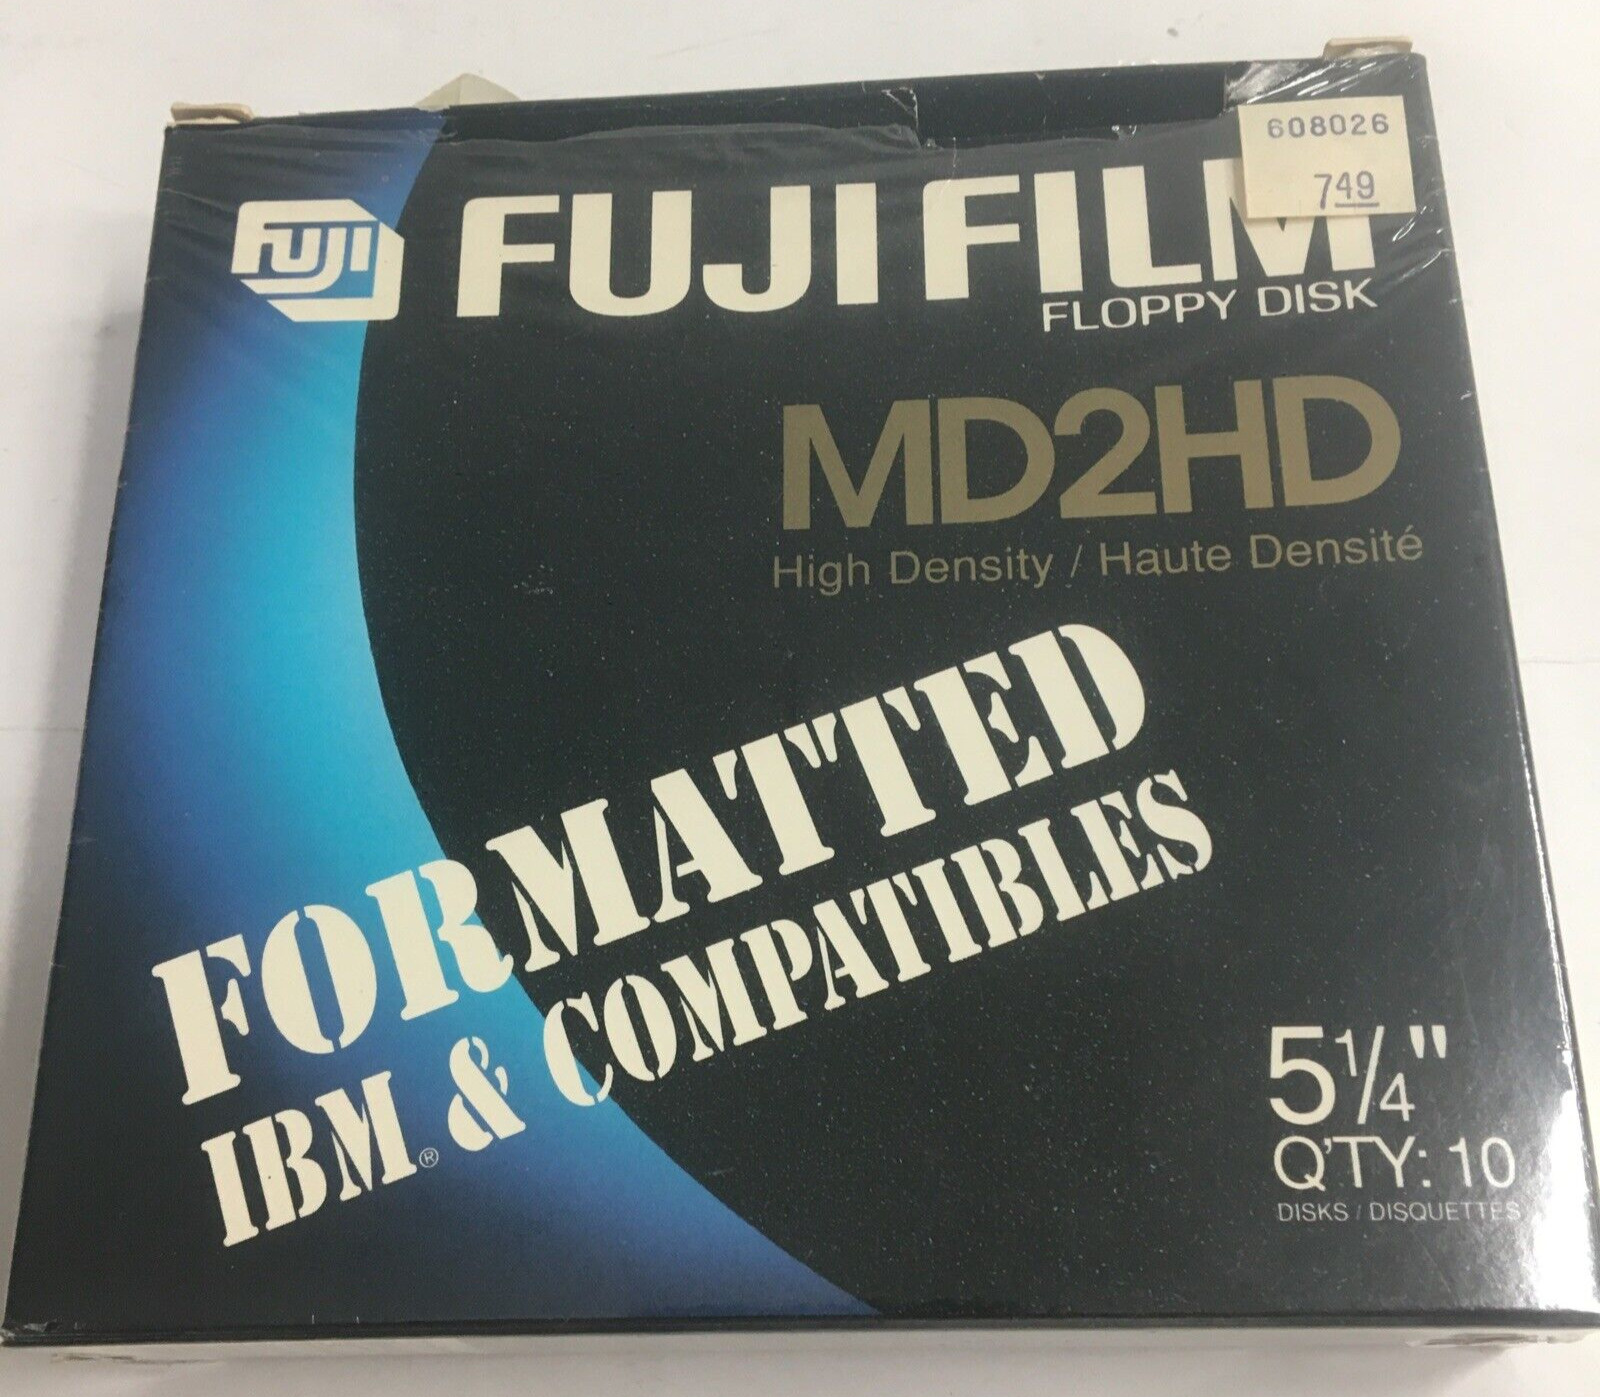 Fuji Film Floppy Disk MD2 HI Density 10-Pk 5.25